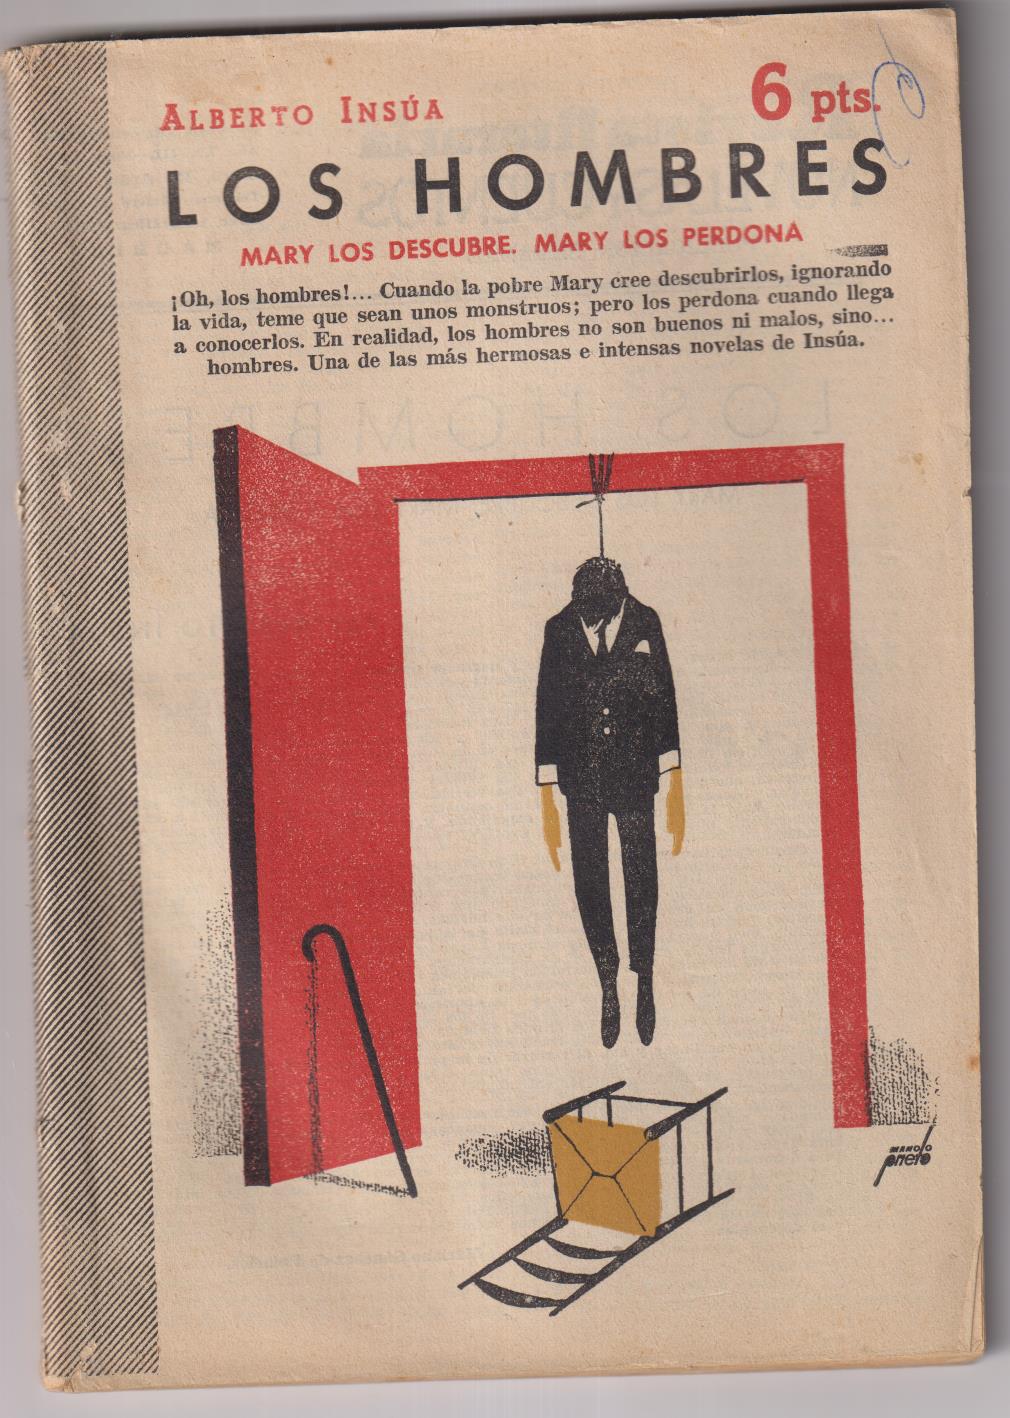 Revista Literaria Novelas y Cuentos nº 1326. Alberto Insúa. Los Hombres, Año 1958